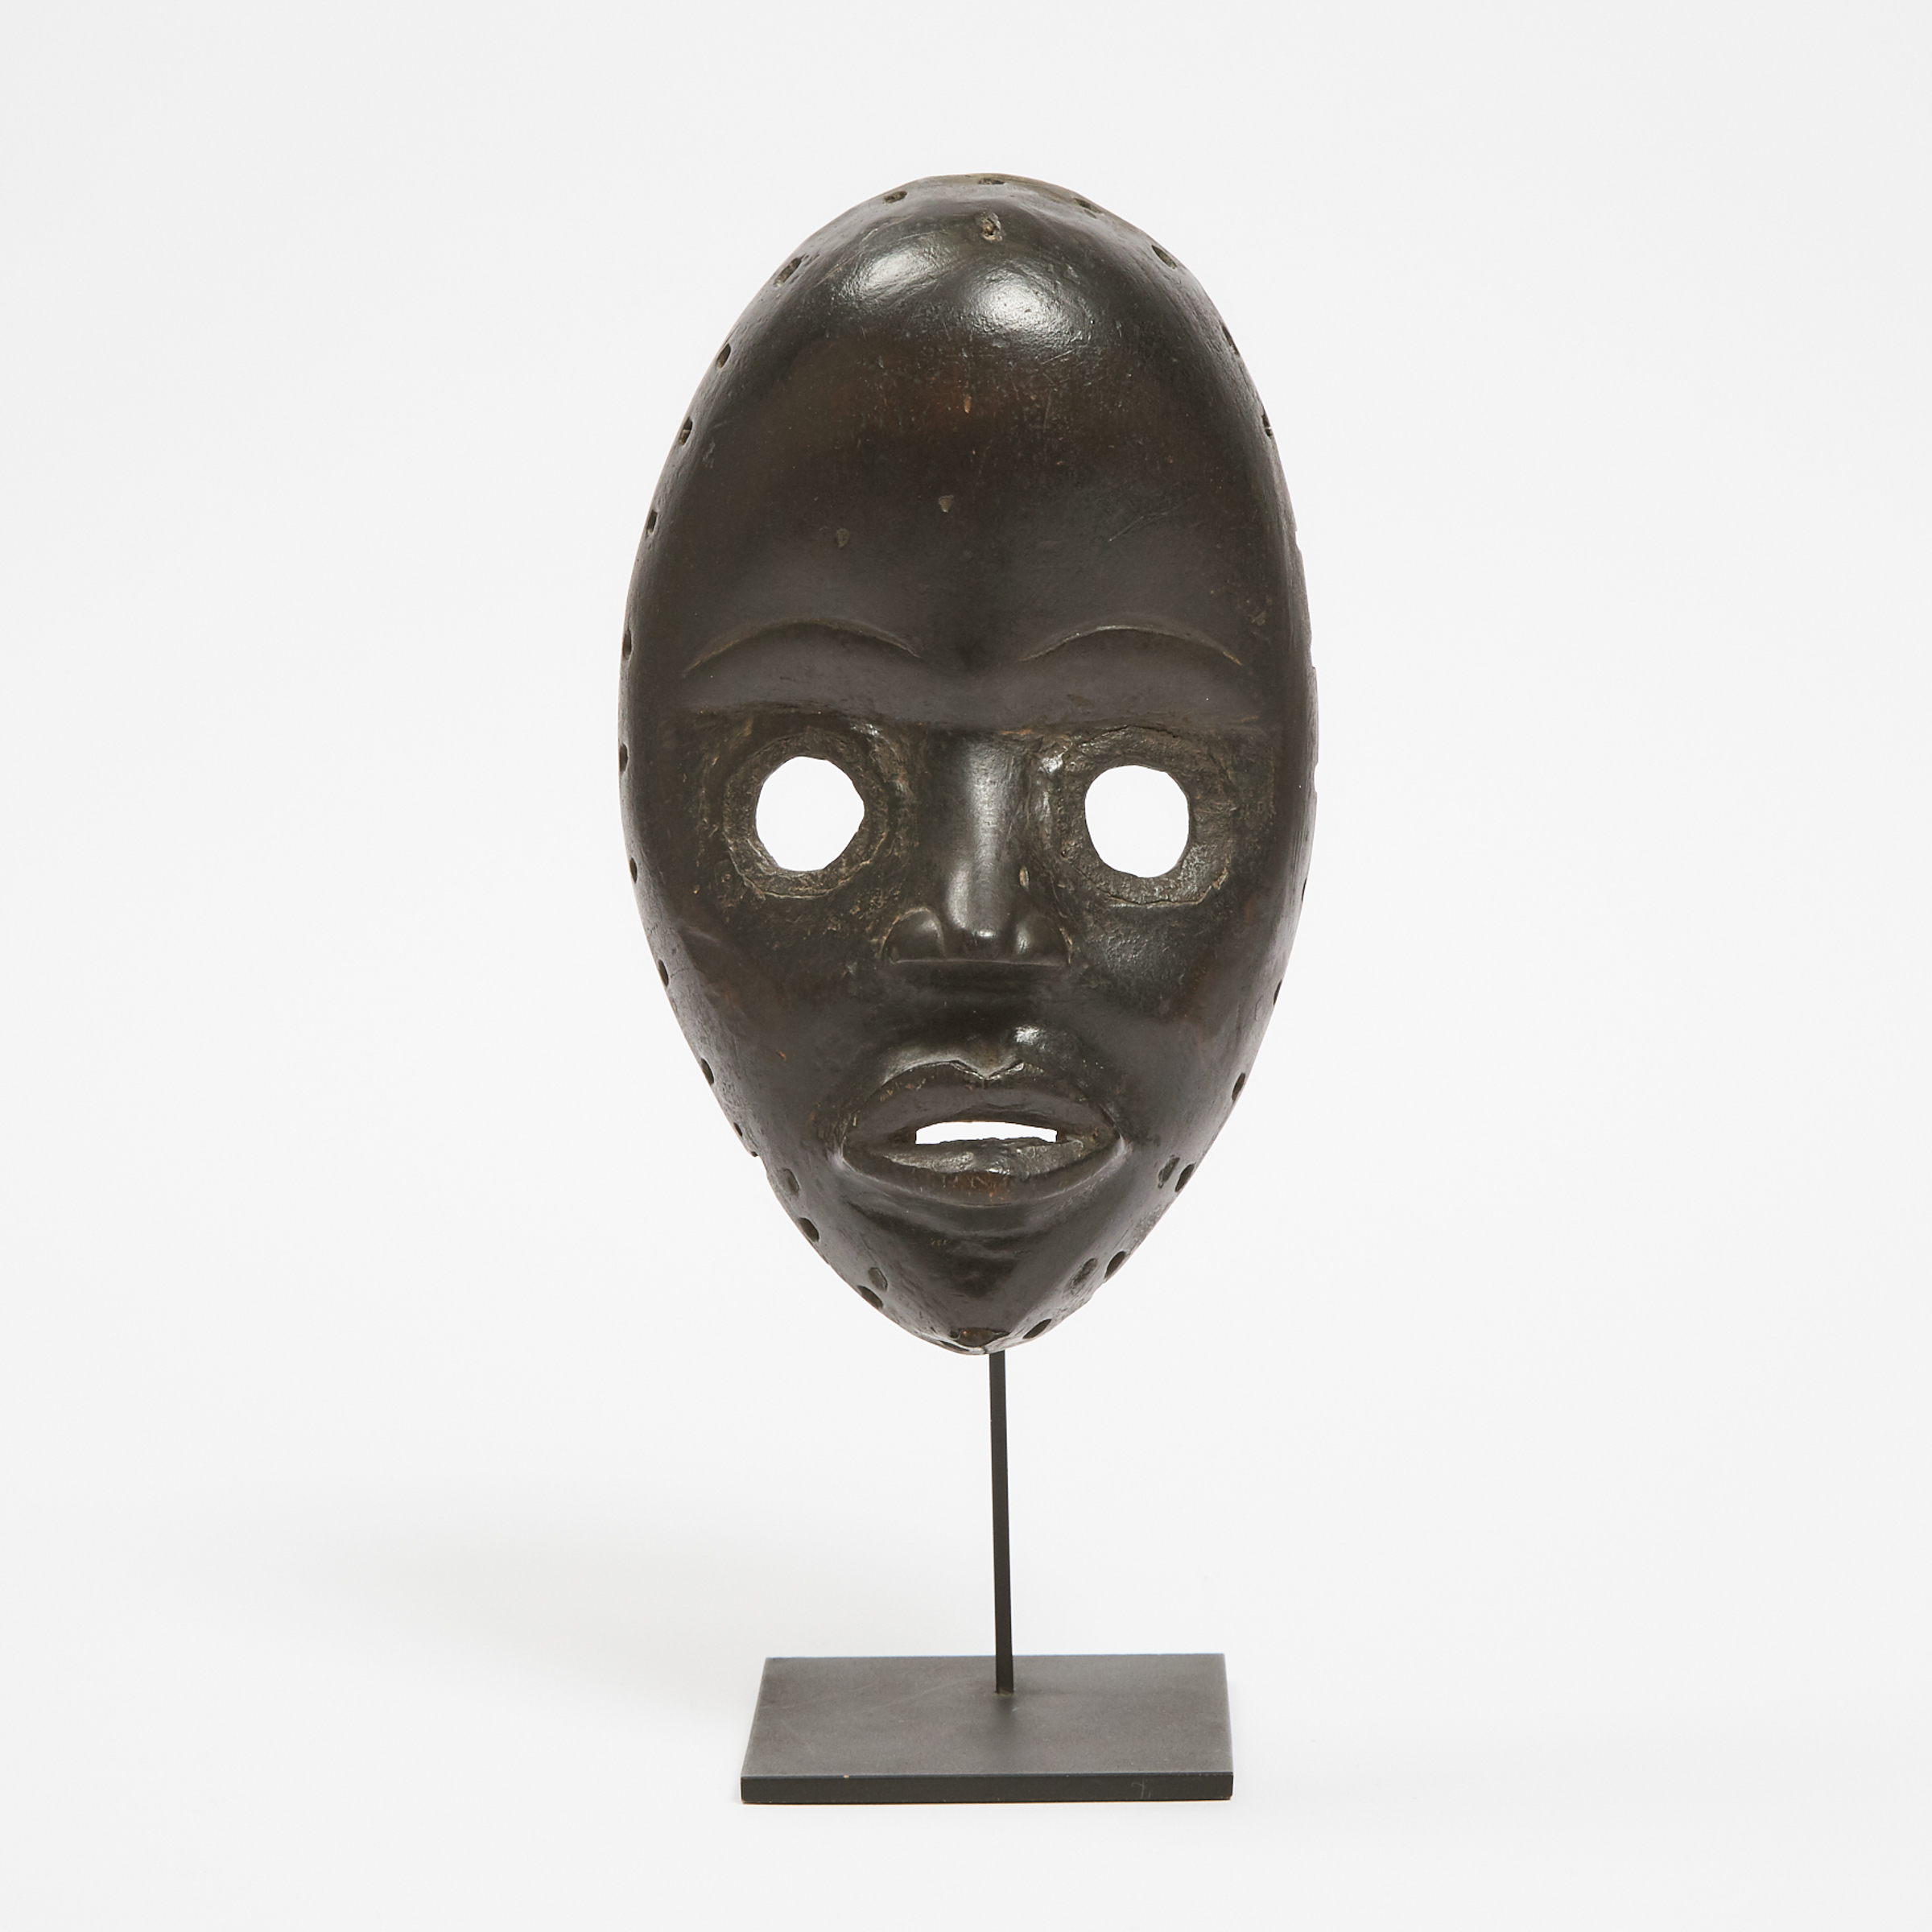 Dan Gunye Ge Mask, Ivory Coast/Liberia, West Africa, late 19th to early 20th century